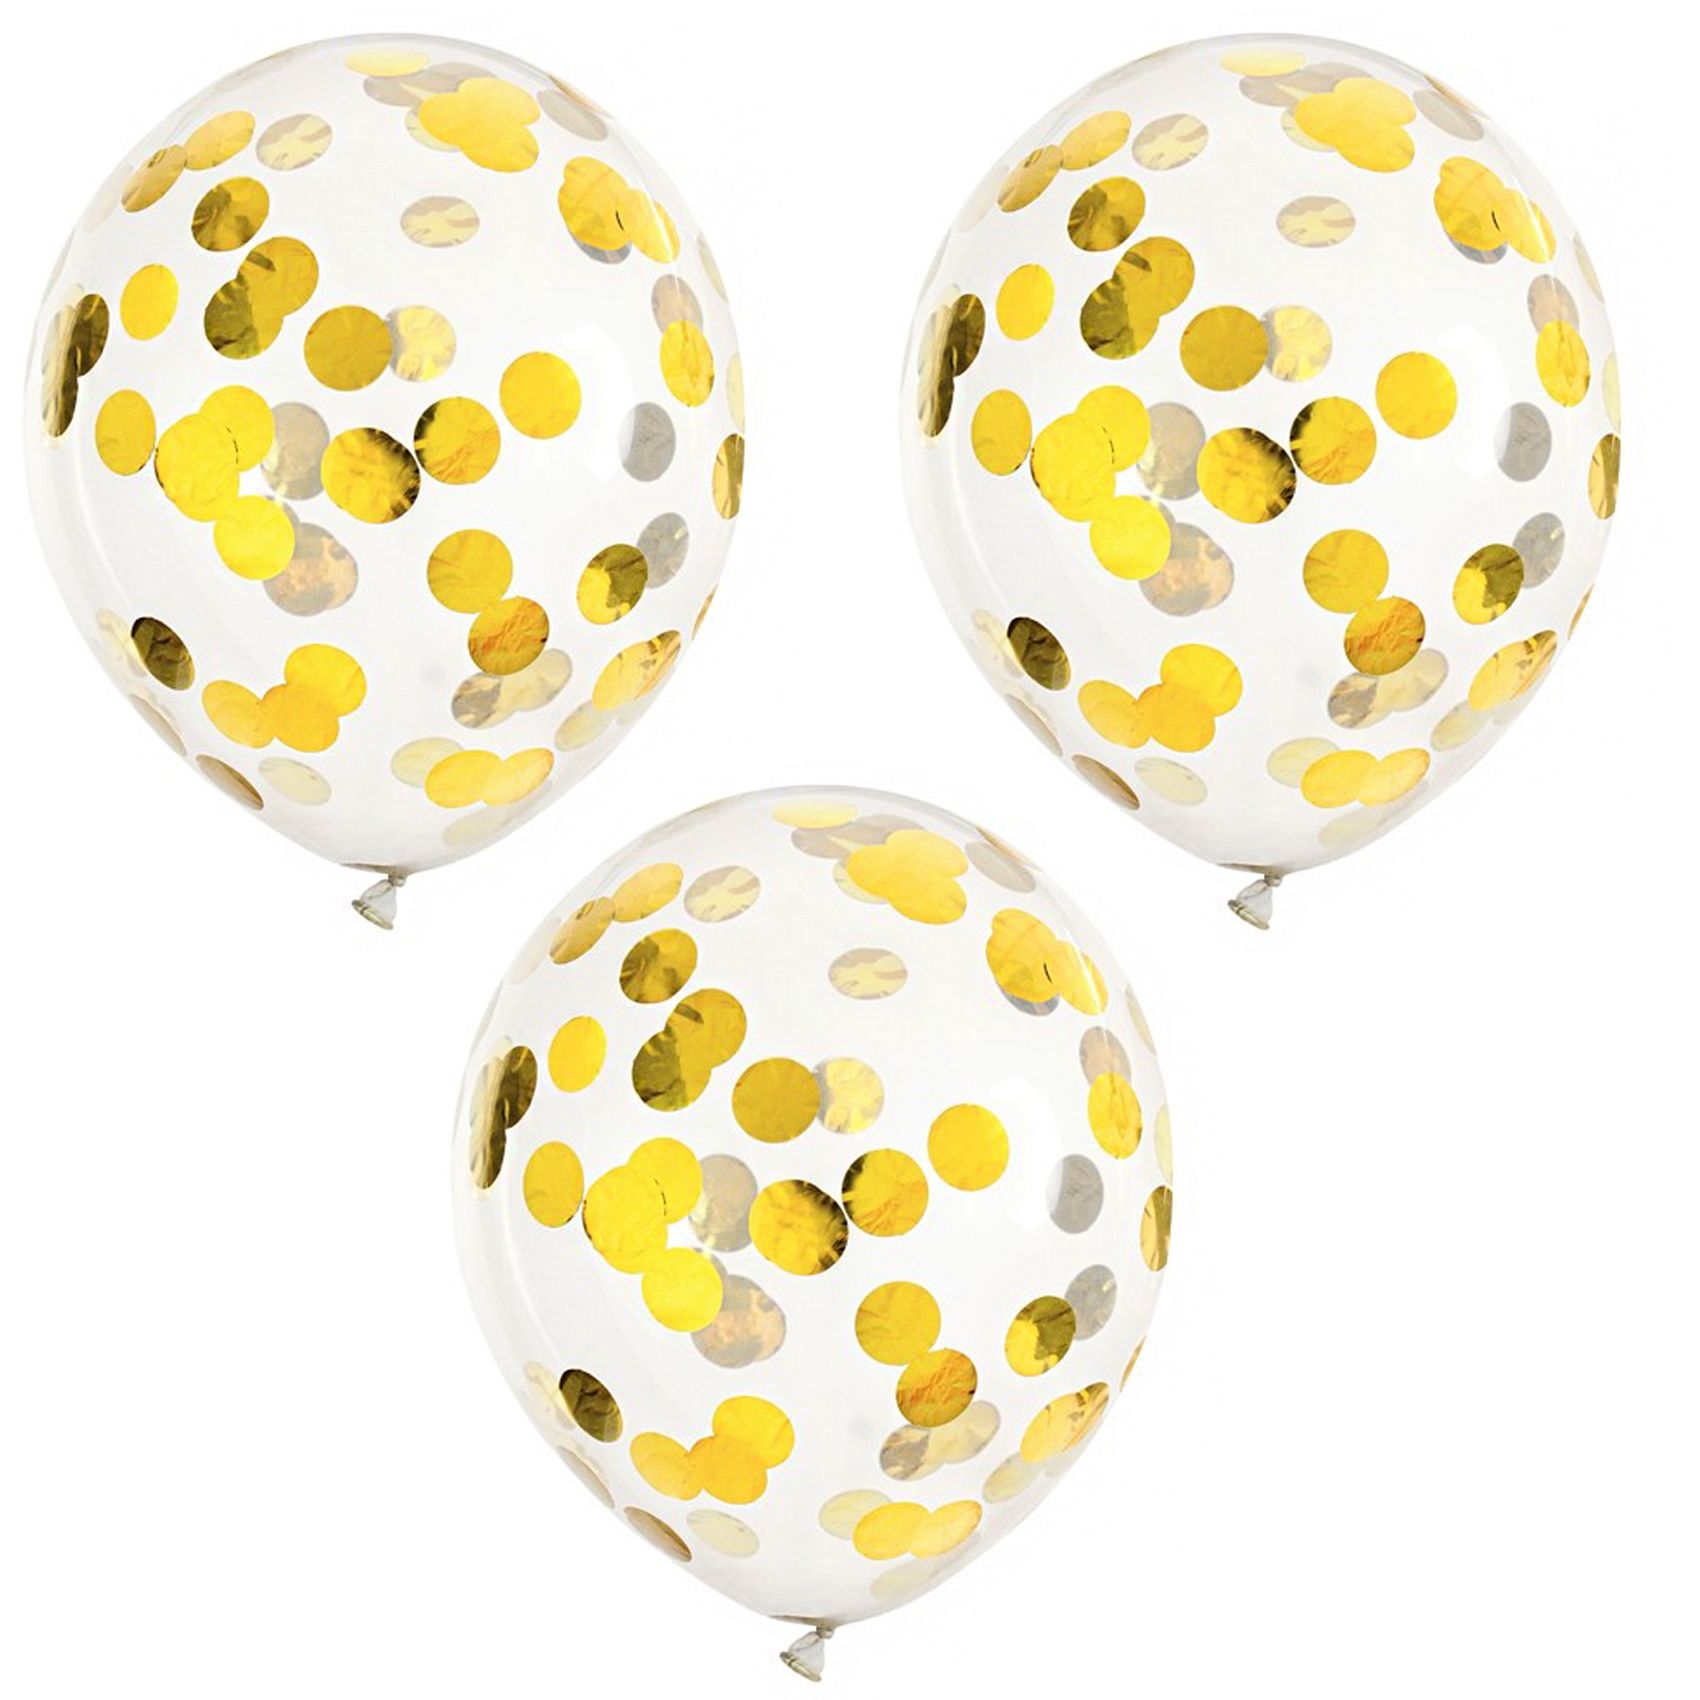 https://www.gueule-damour.com/10677/ballons-d-anniversaire-confettis-dores-lot-de-3.jpg